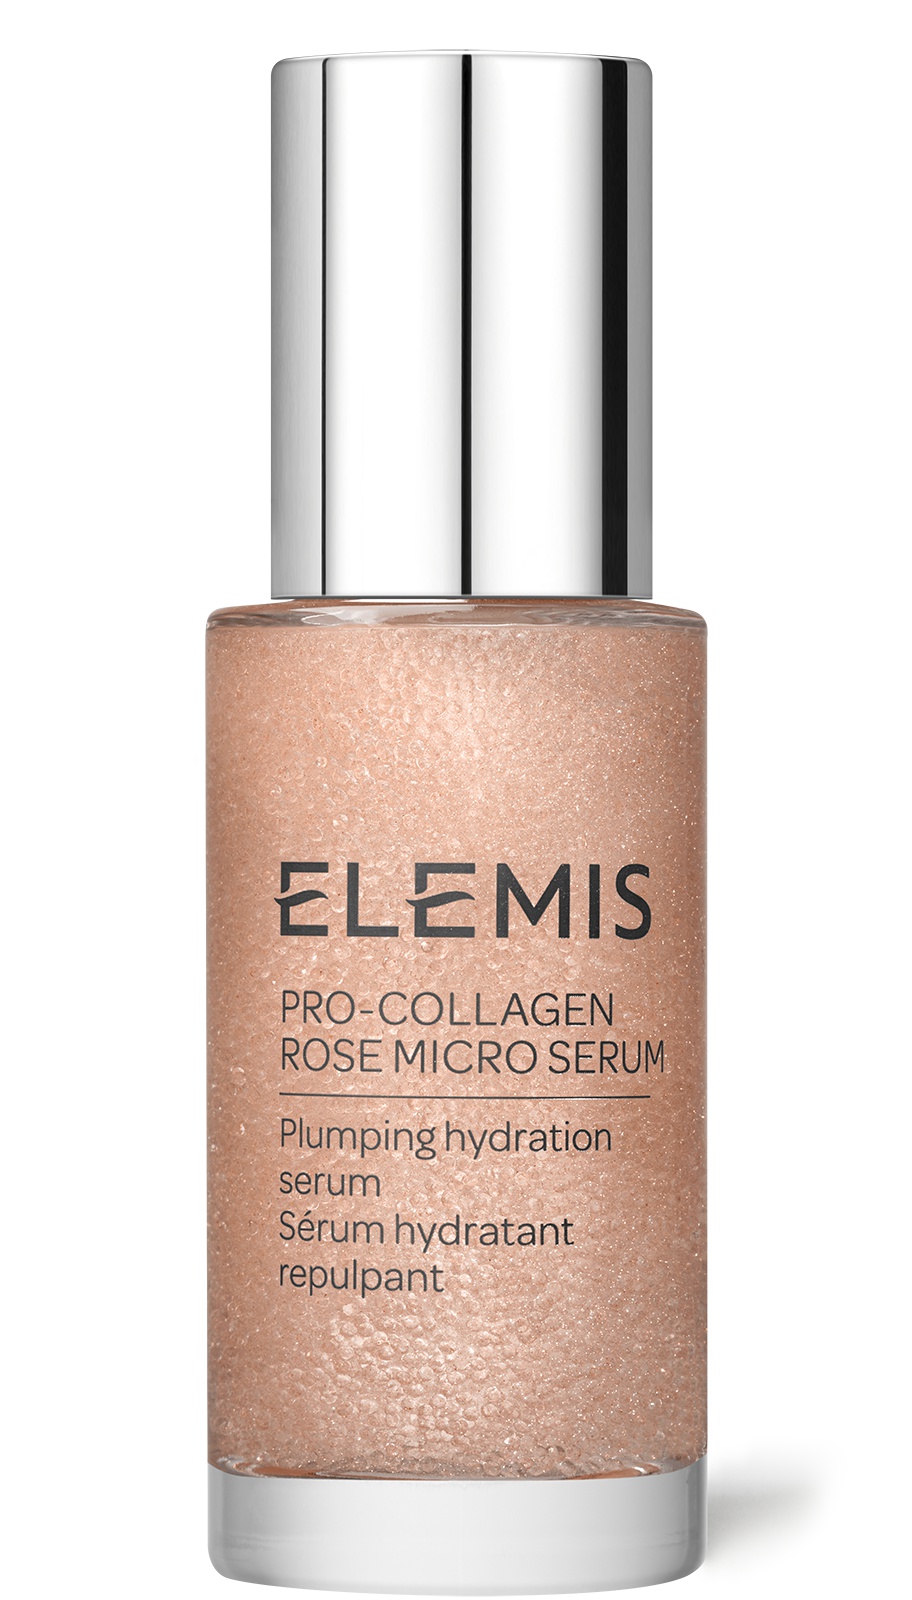 Elemis Pro-collagen Rose Micro Serum